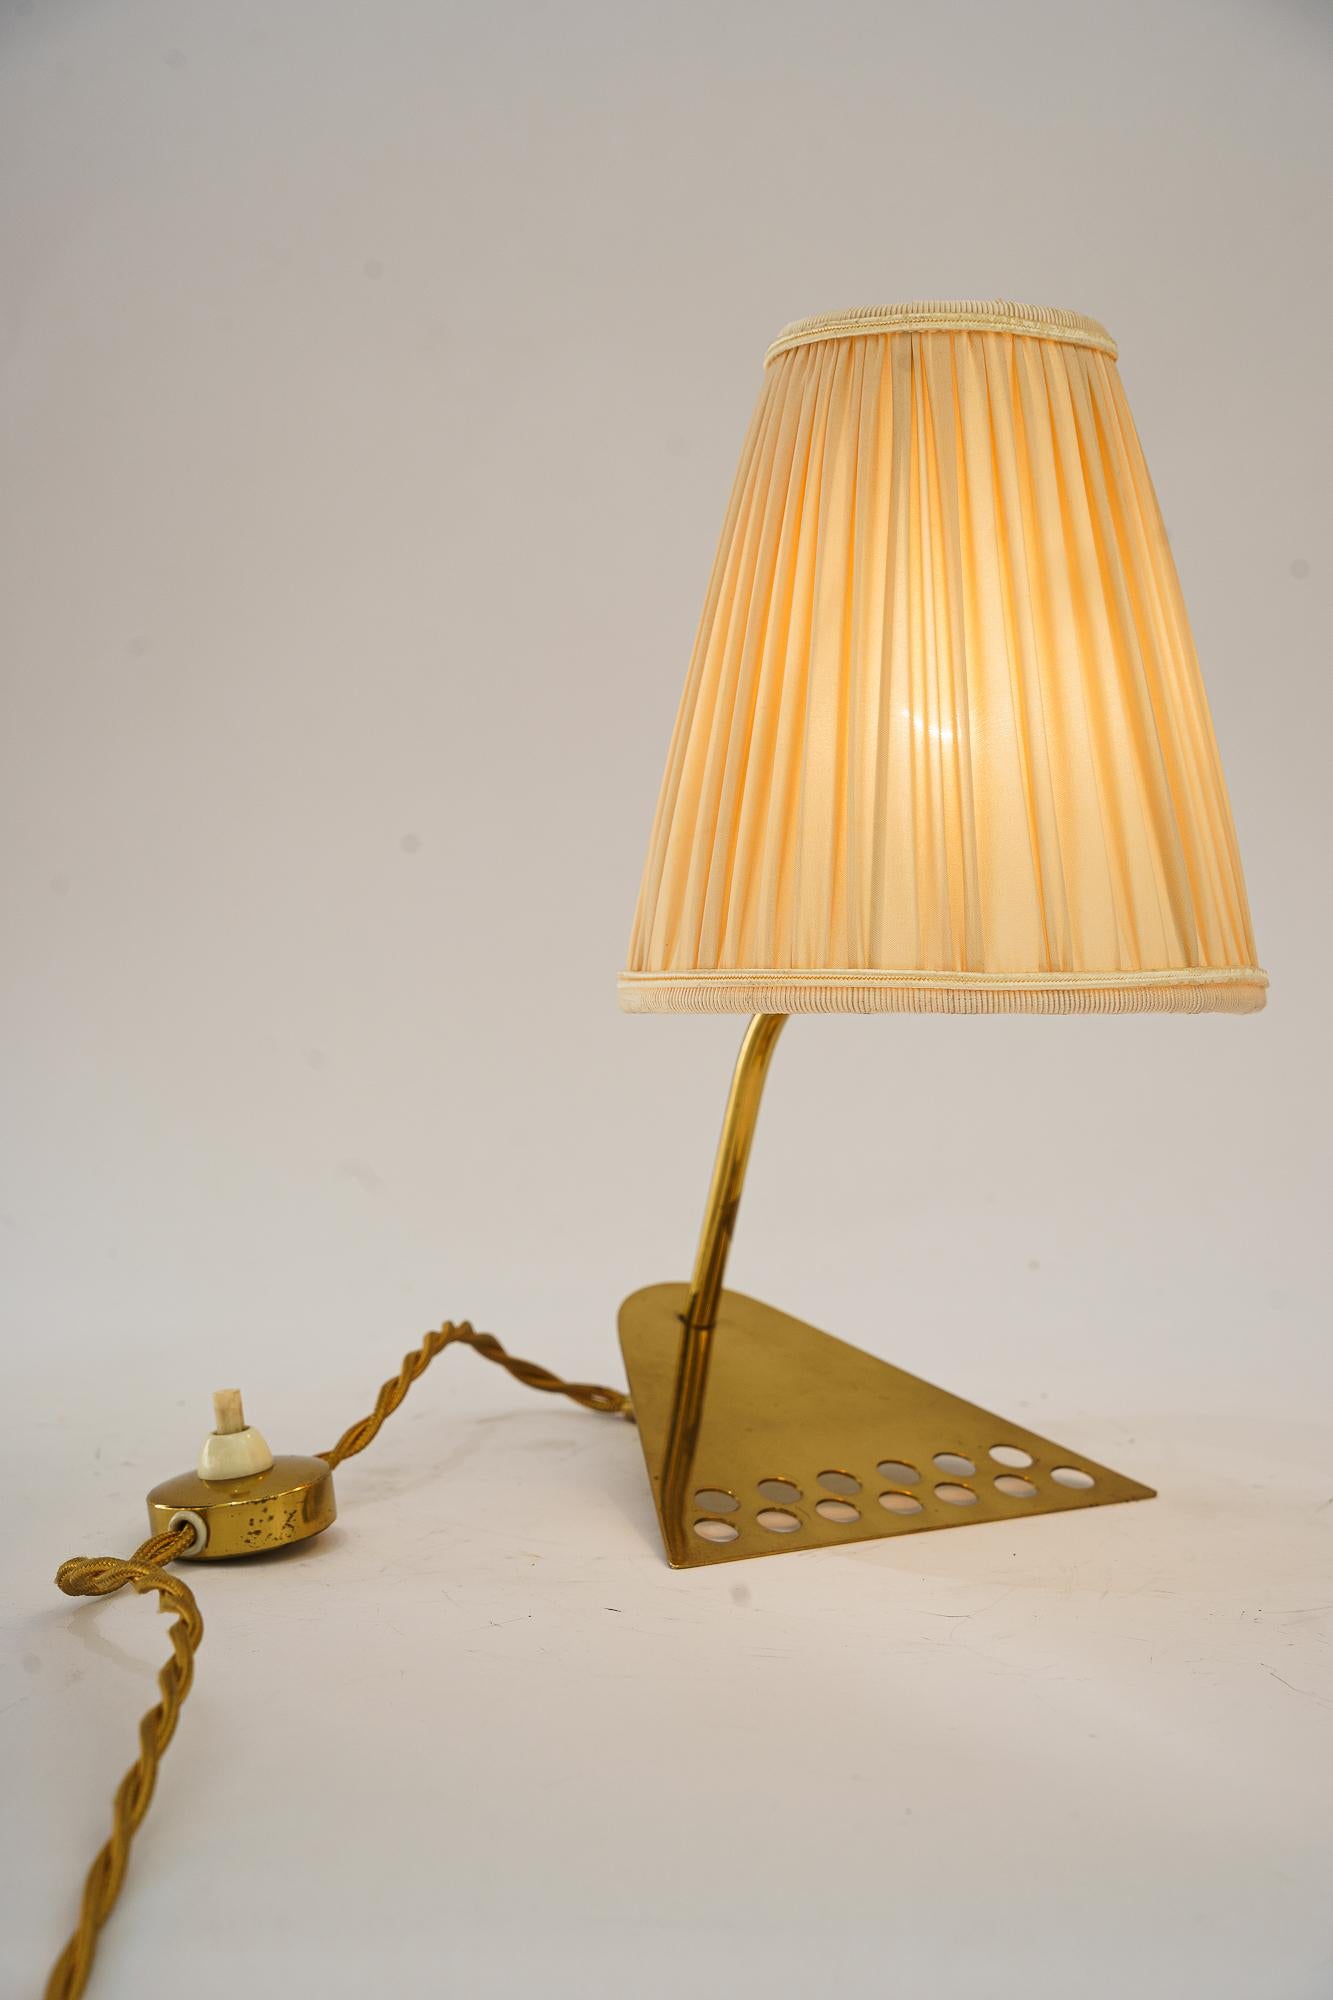 Seltene Rupert Nikoll Tischlampe mit Stoffschirm wien um 1950 (Messing)